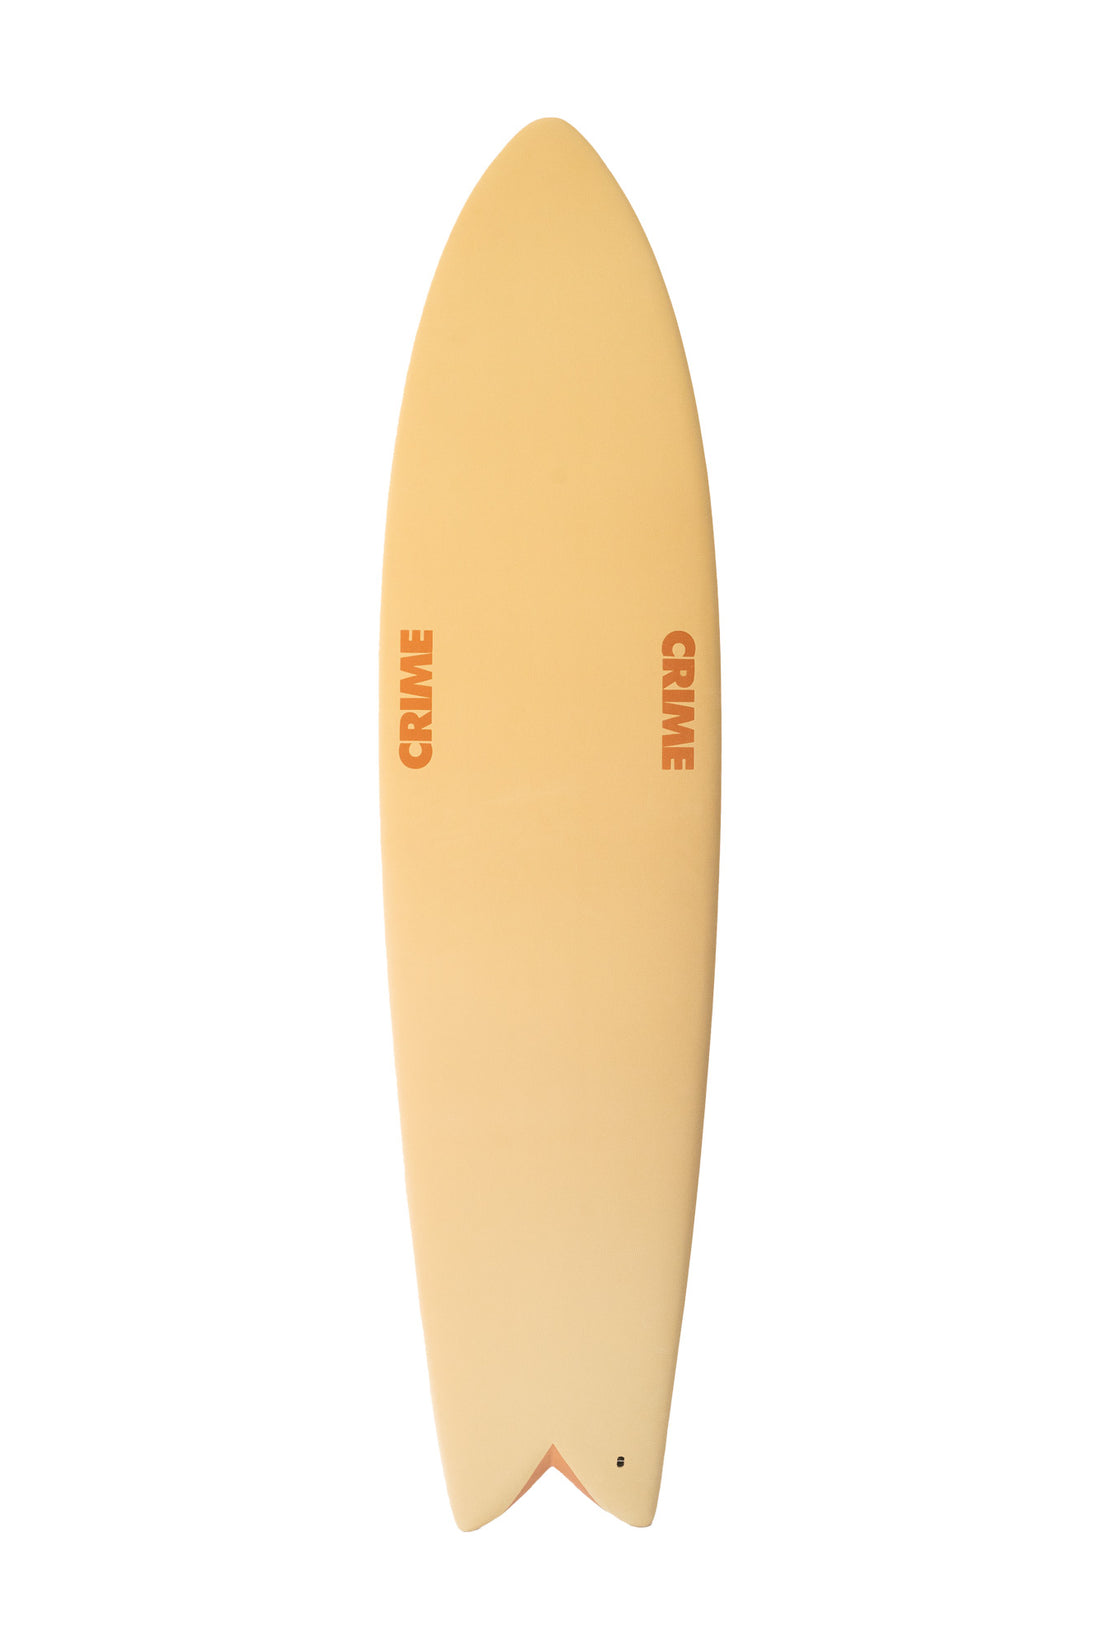 7'10 SURF CRIME LONG FISH - OLD FOAM/UMBRE  SURF CRIME   